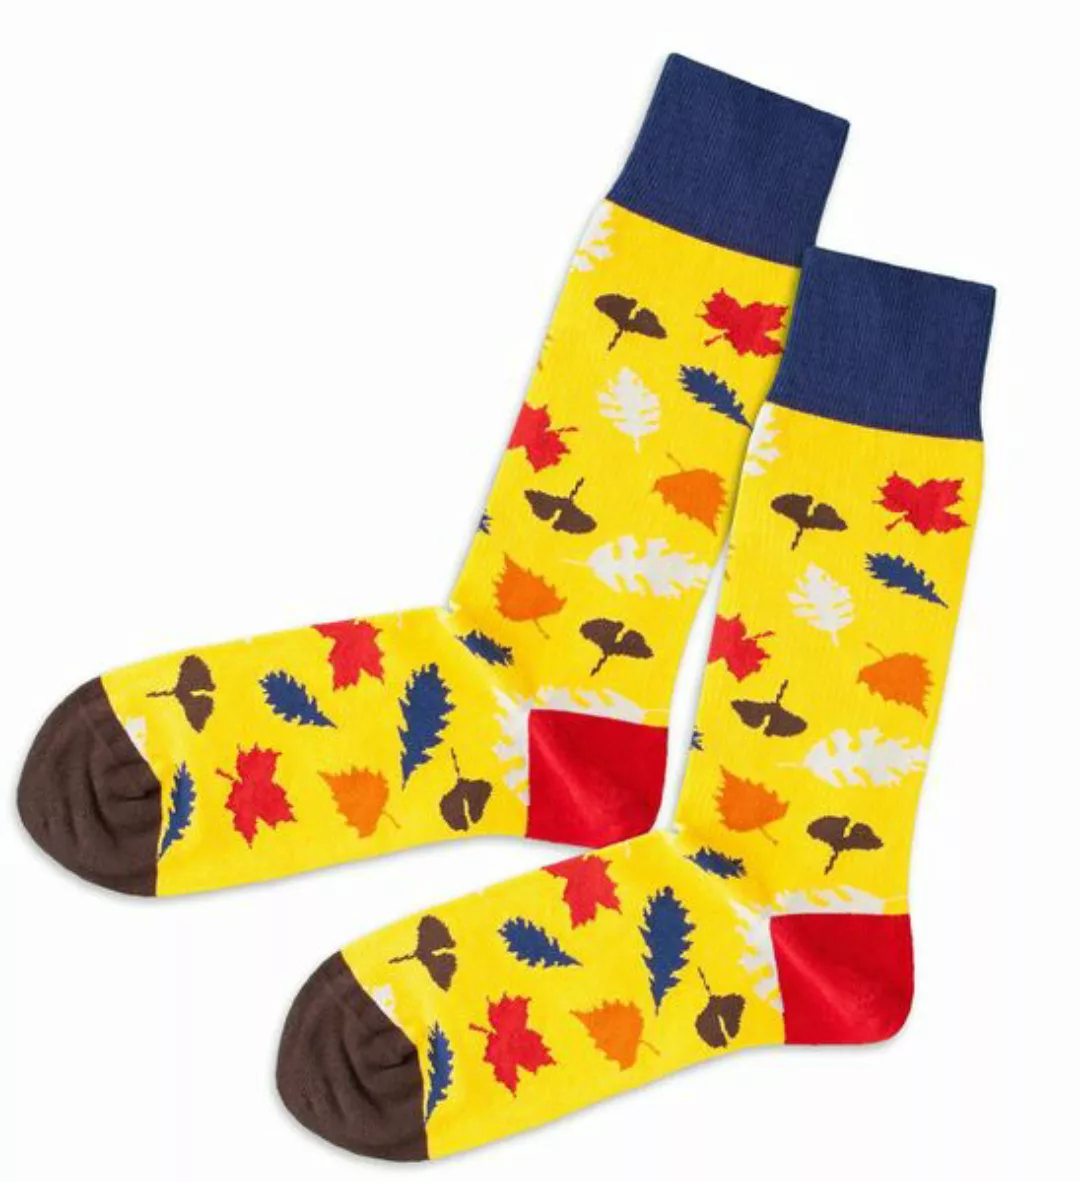 Bunte Socken, Bio Baumwolle günstig online kaufen